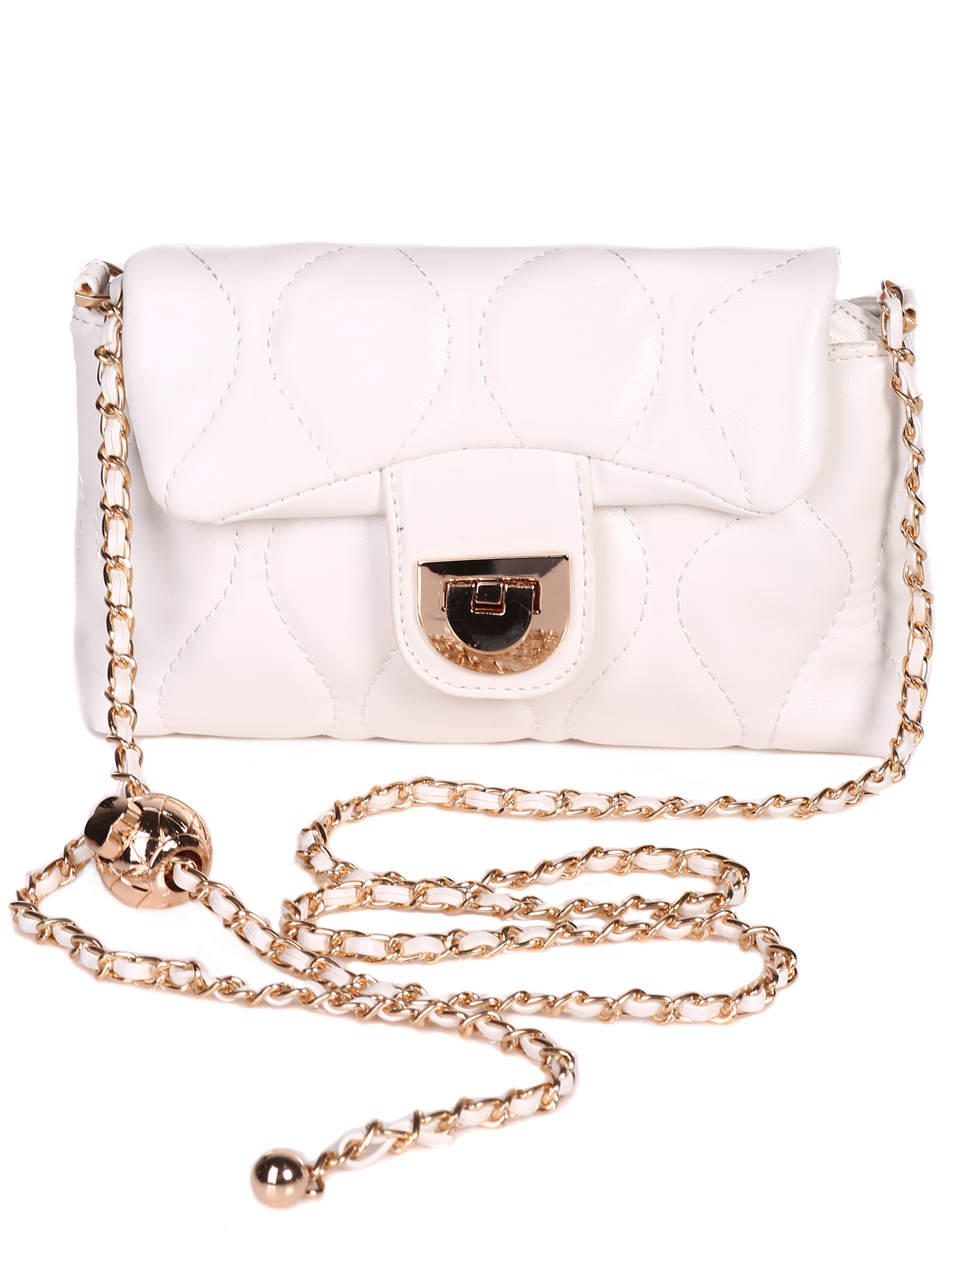 Дамска малка чанта с дълга дръжка 9Q-23070 white